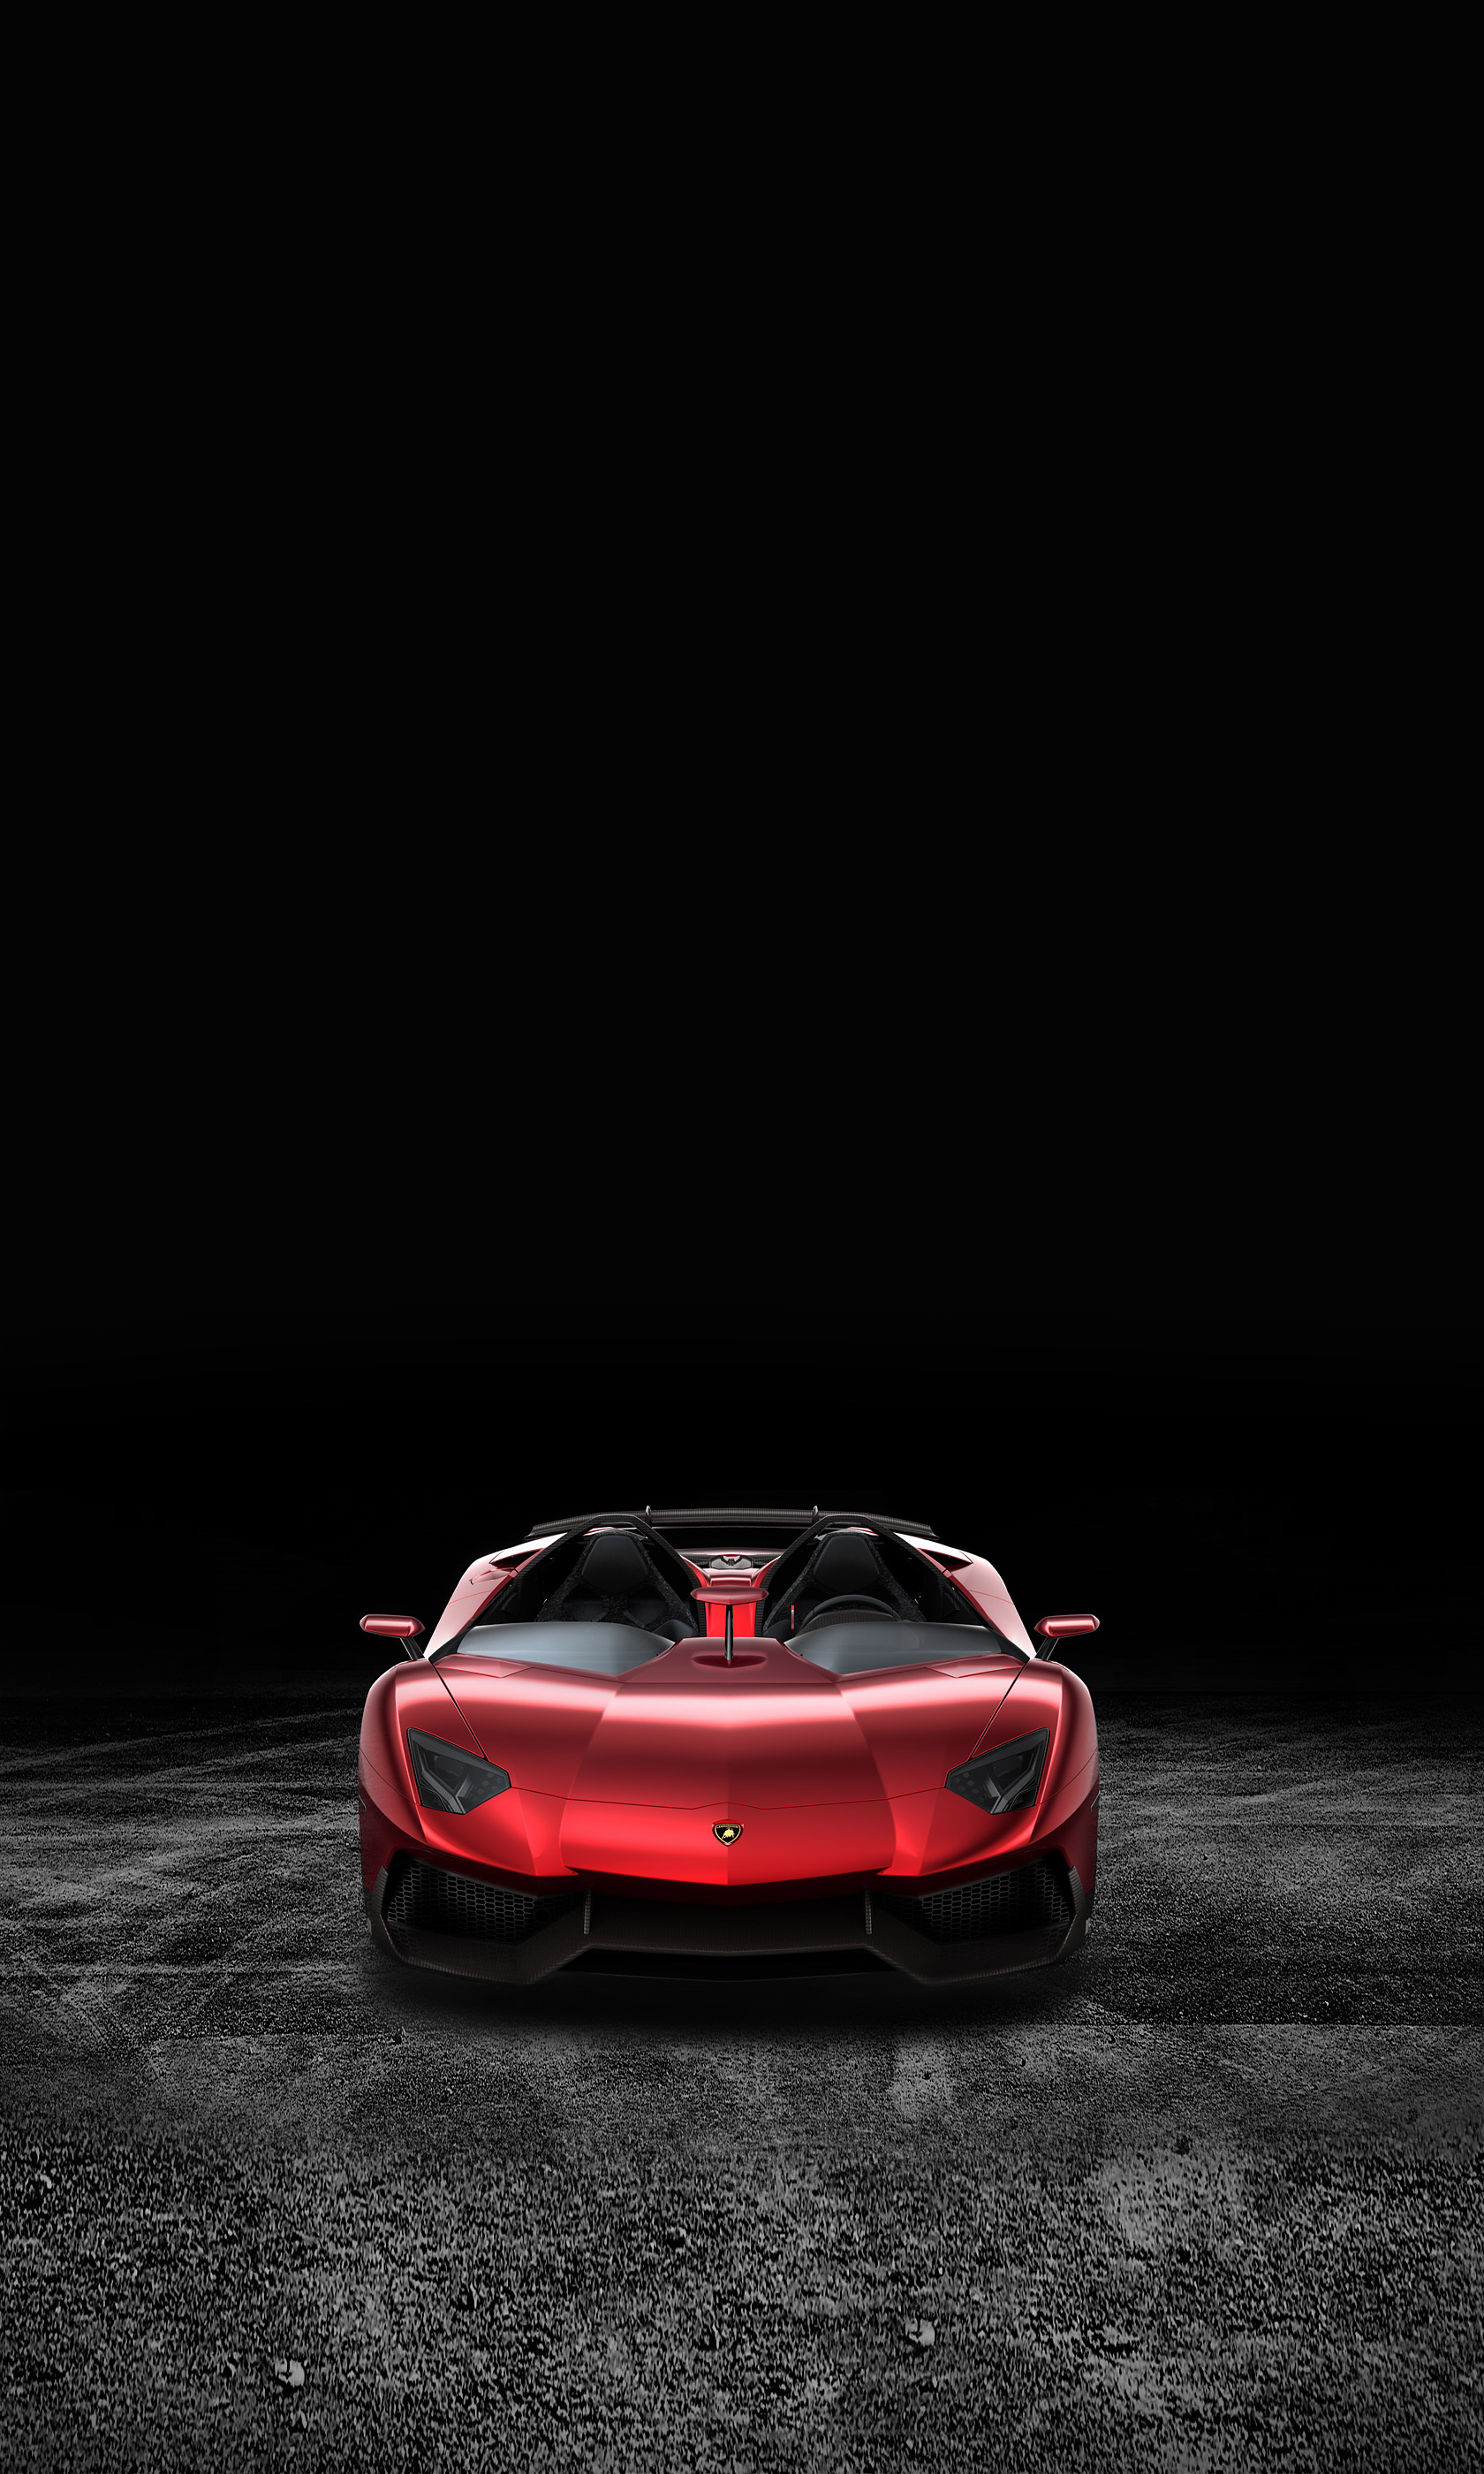  2012 Lamborghini Aventador J Concept Wallpaper.